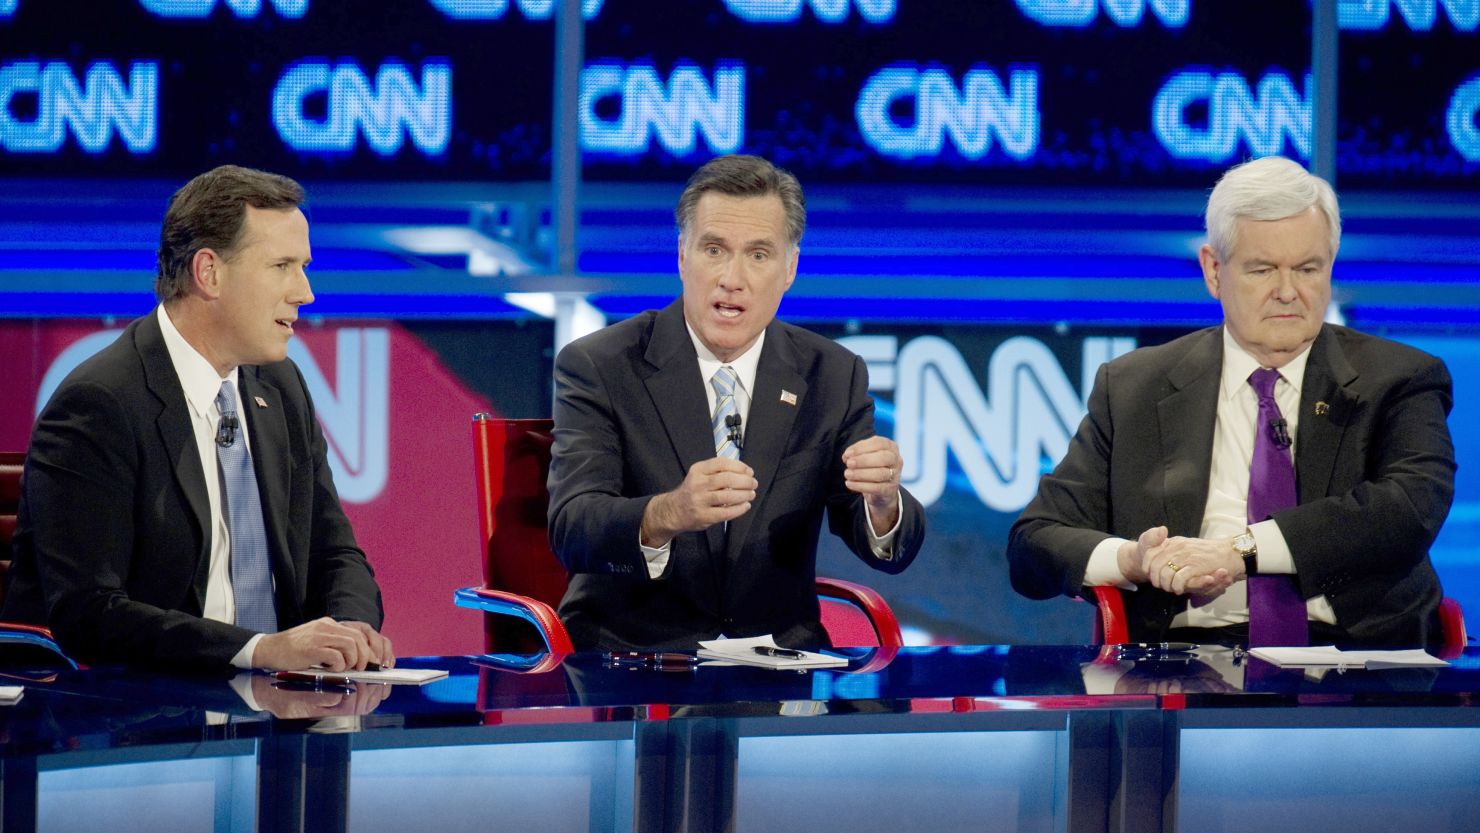 GOP presidential candidates Rick Santorum, Mitt Romney and Newt Gingrich face off in last week's debate in Mesa, Arizona.